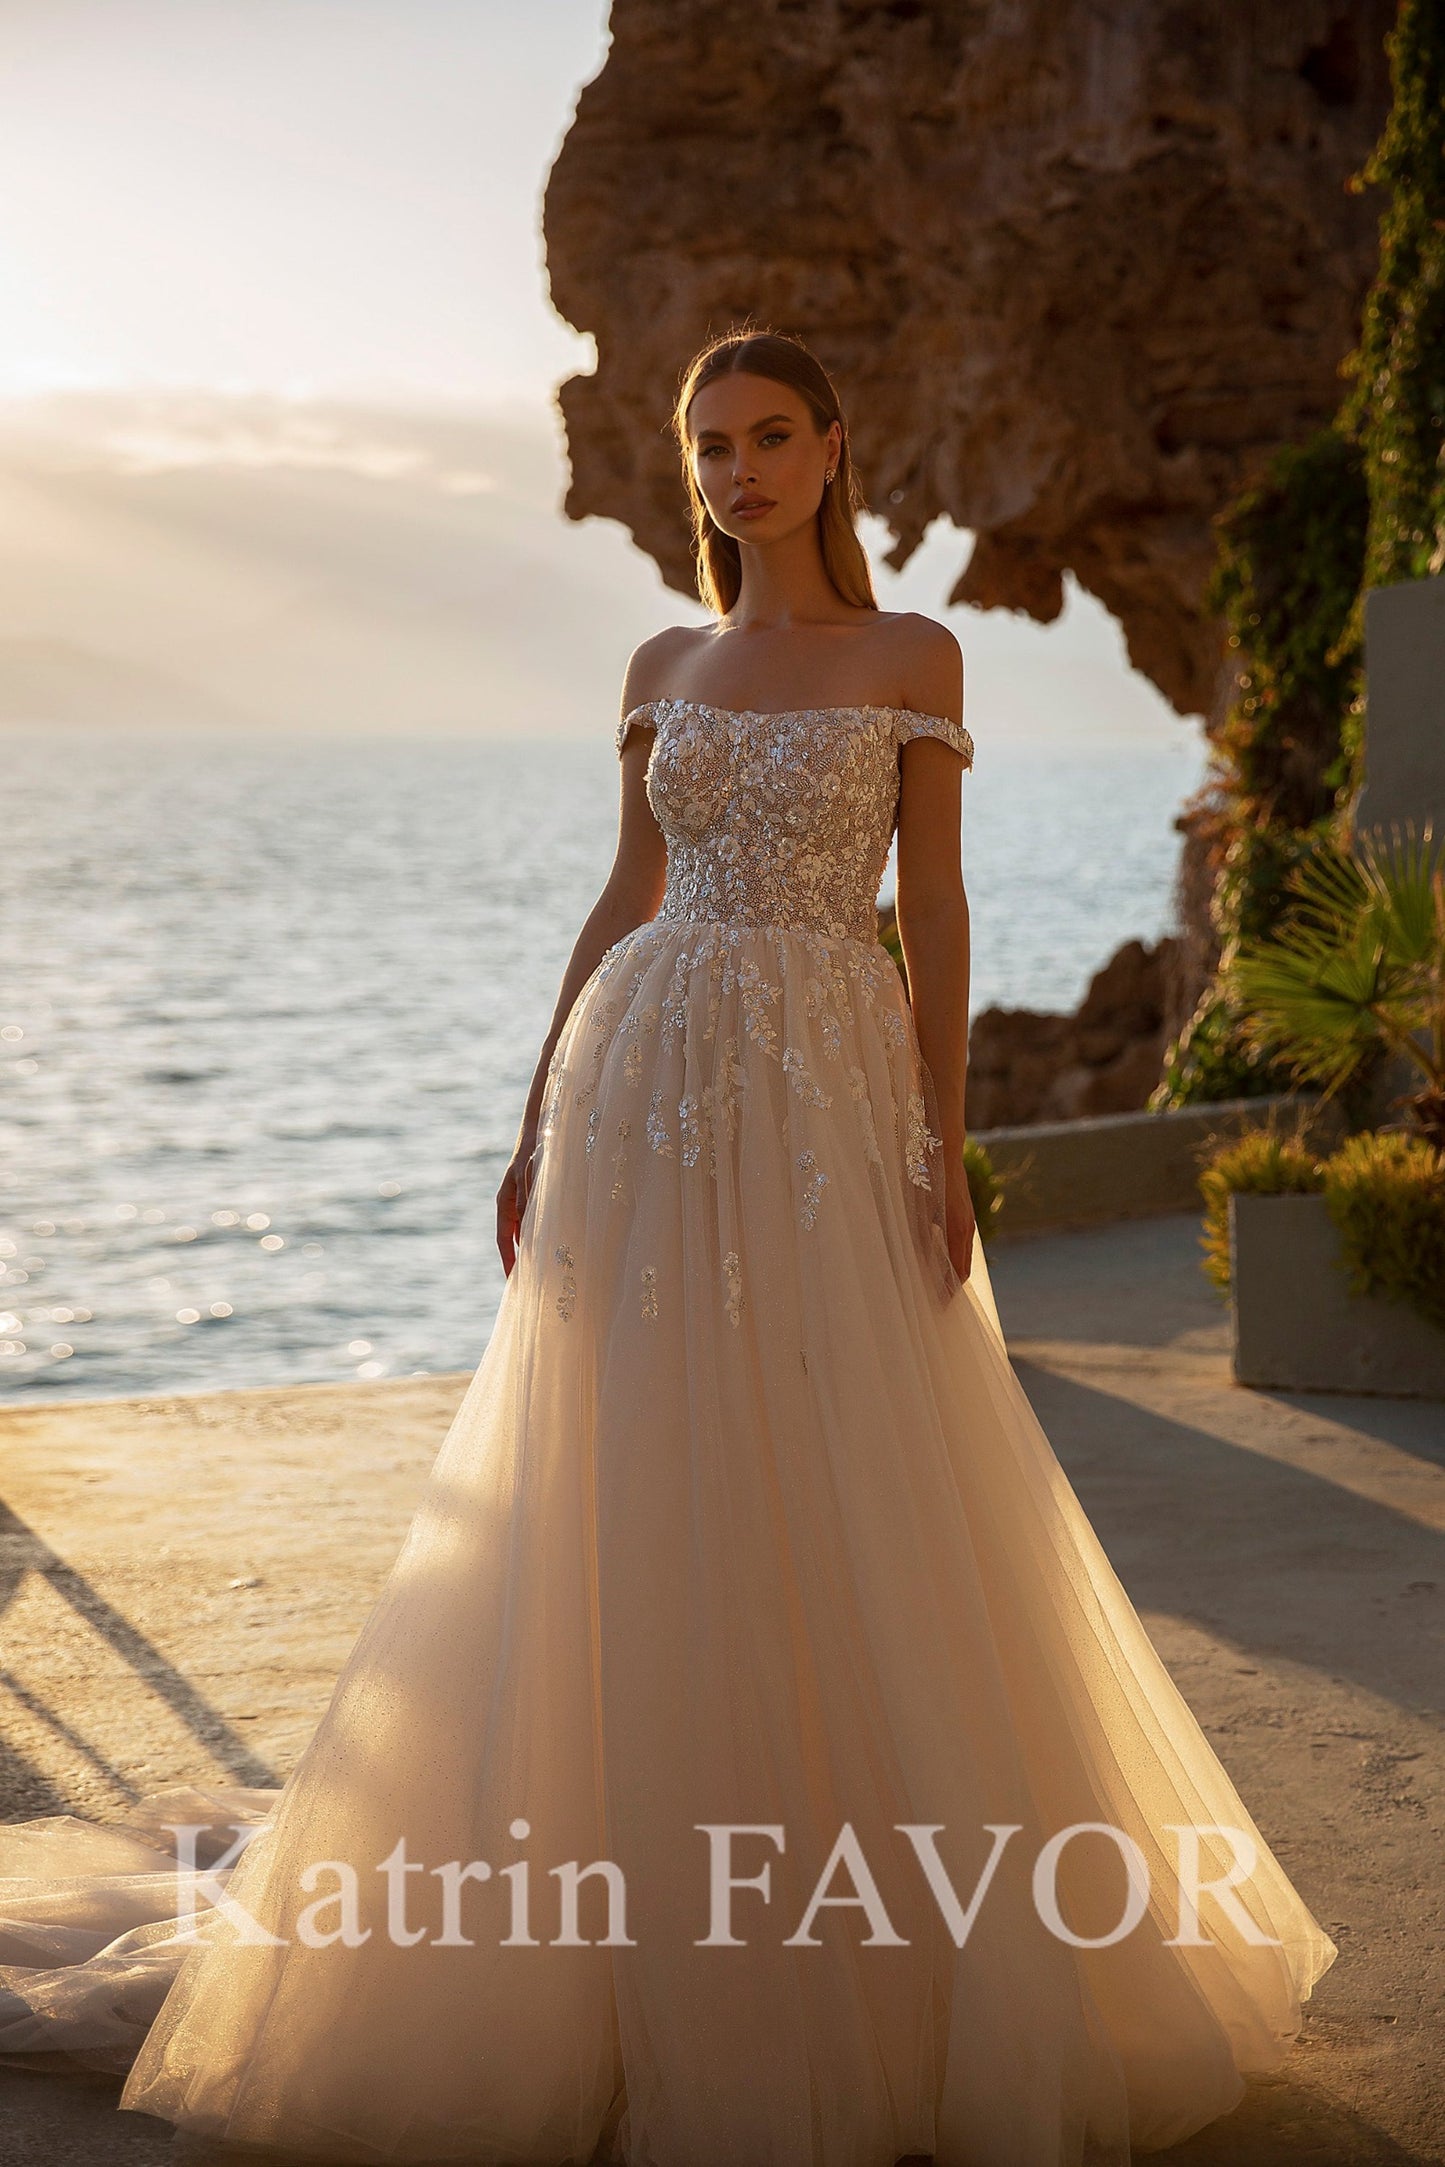 KatrinFAVORboutique-Off the shoulder a-line floral wedding dress